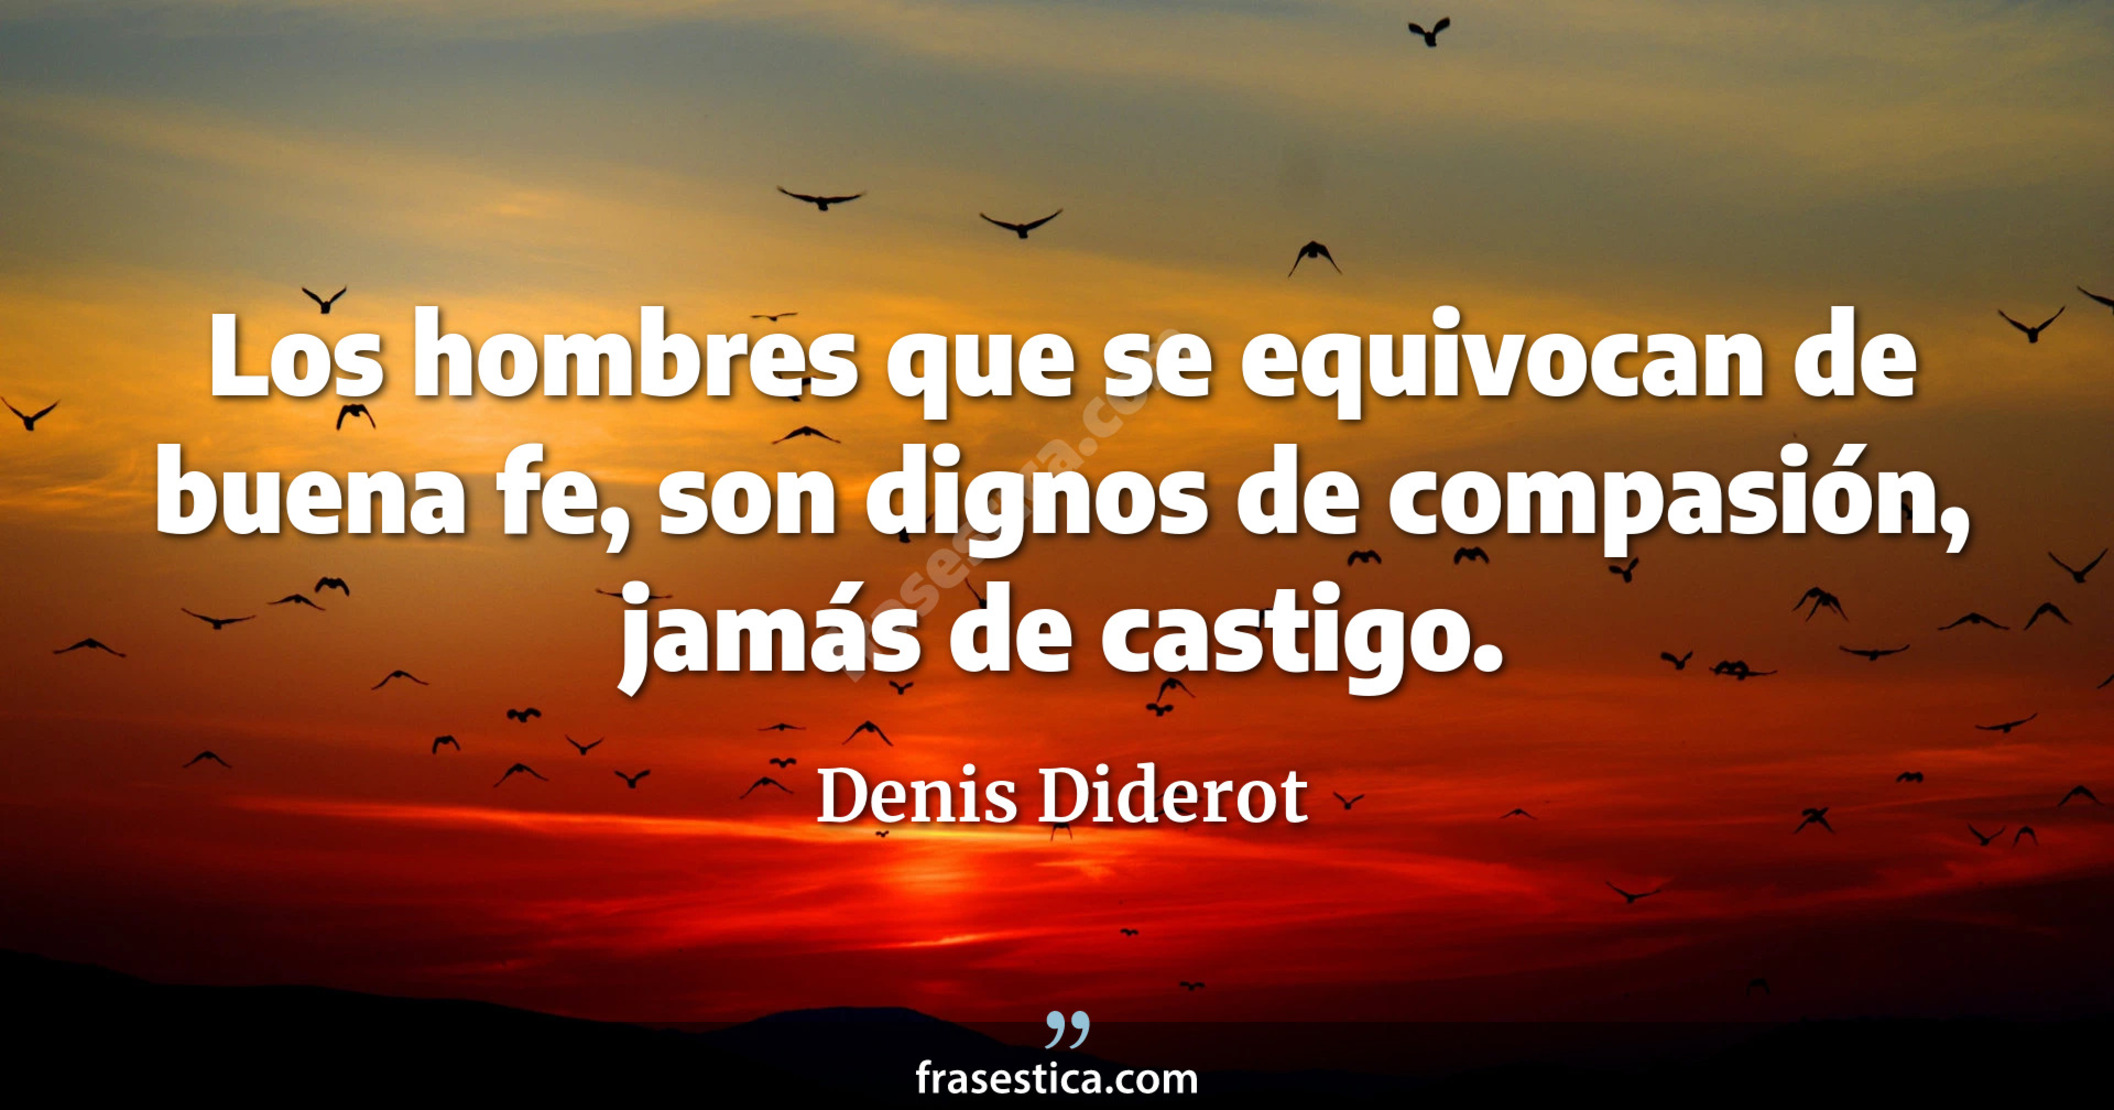 Los hombres que se equivocan de buena fe, son dignos de compasión, jamás de castigo. - Denis Diderot